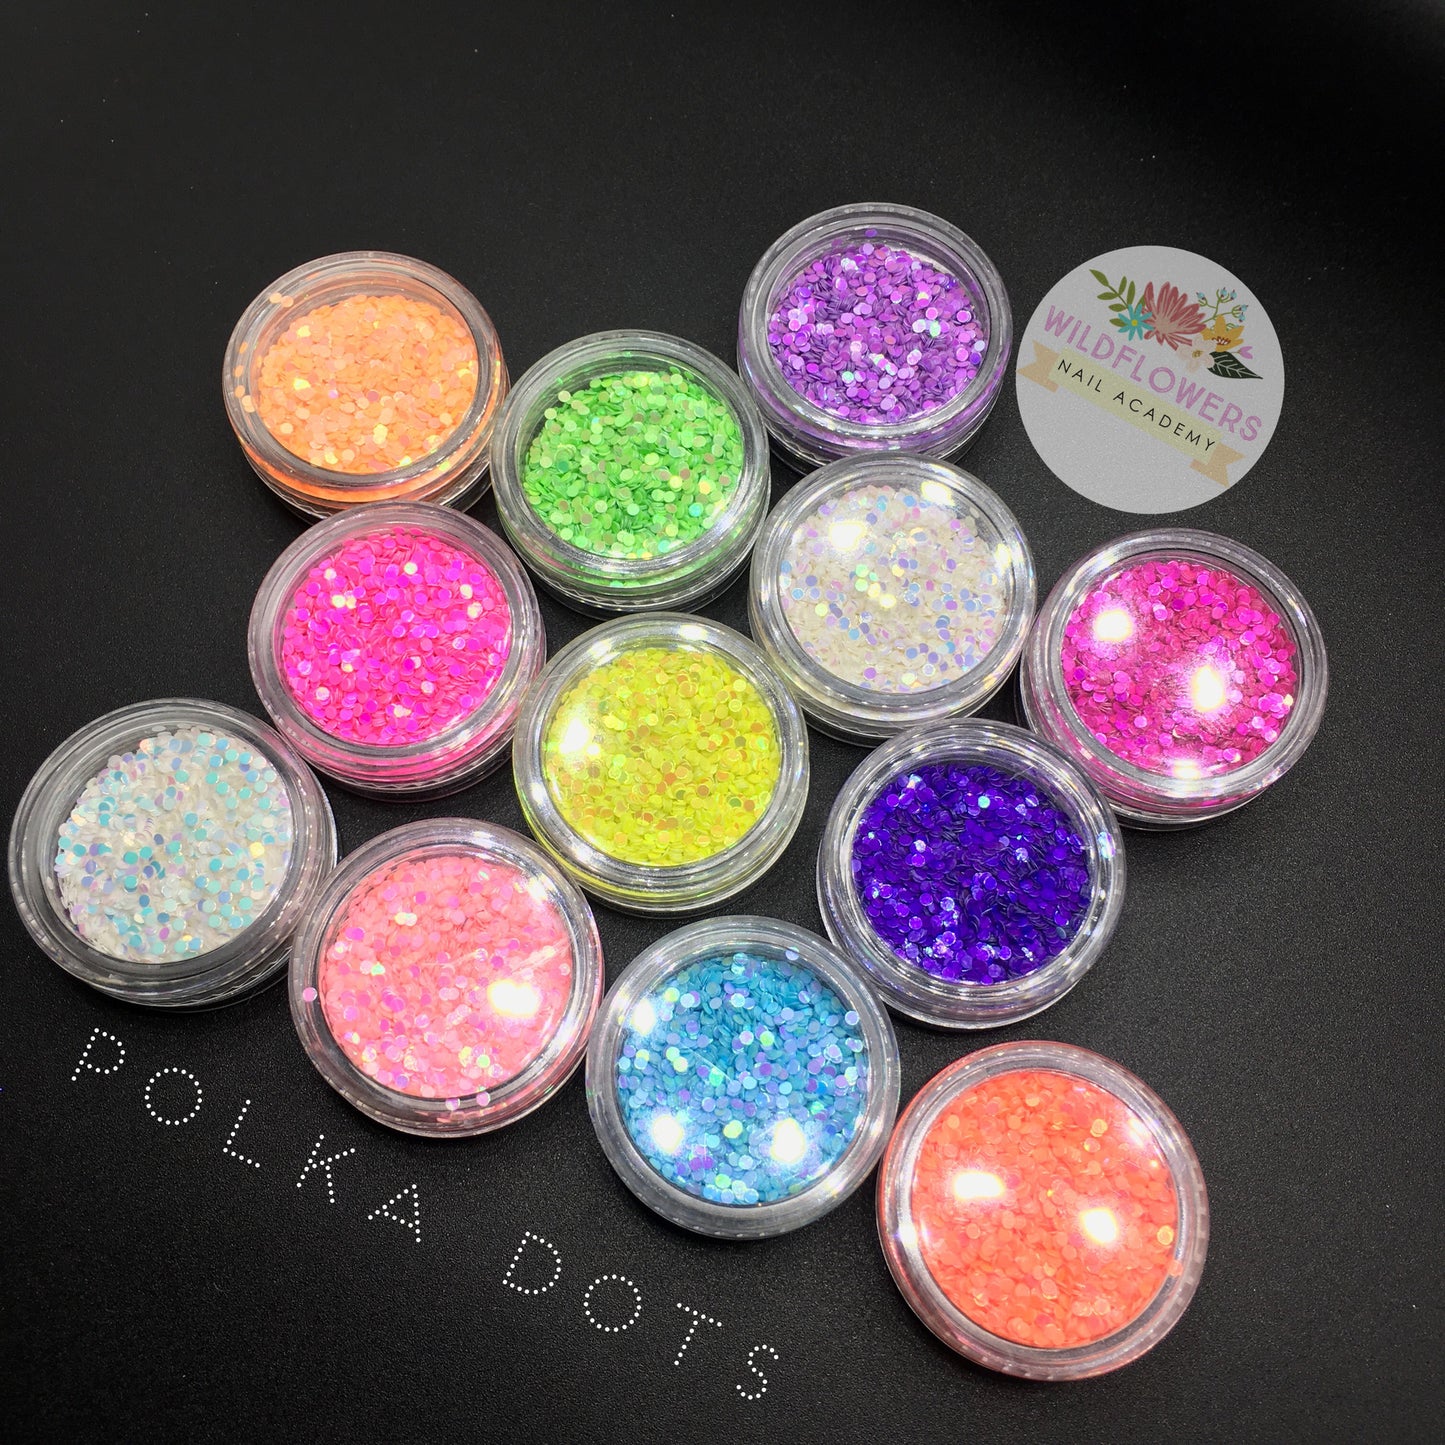 Glitter - Perfect Polka Dots!